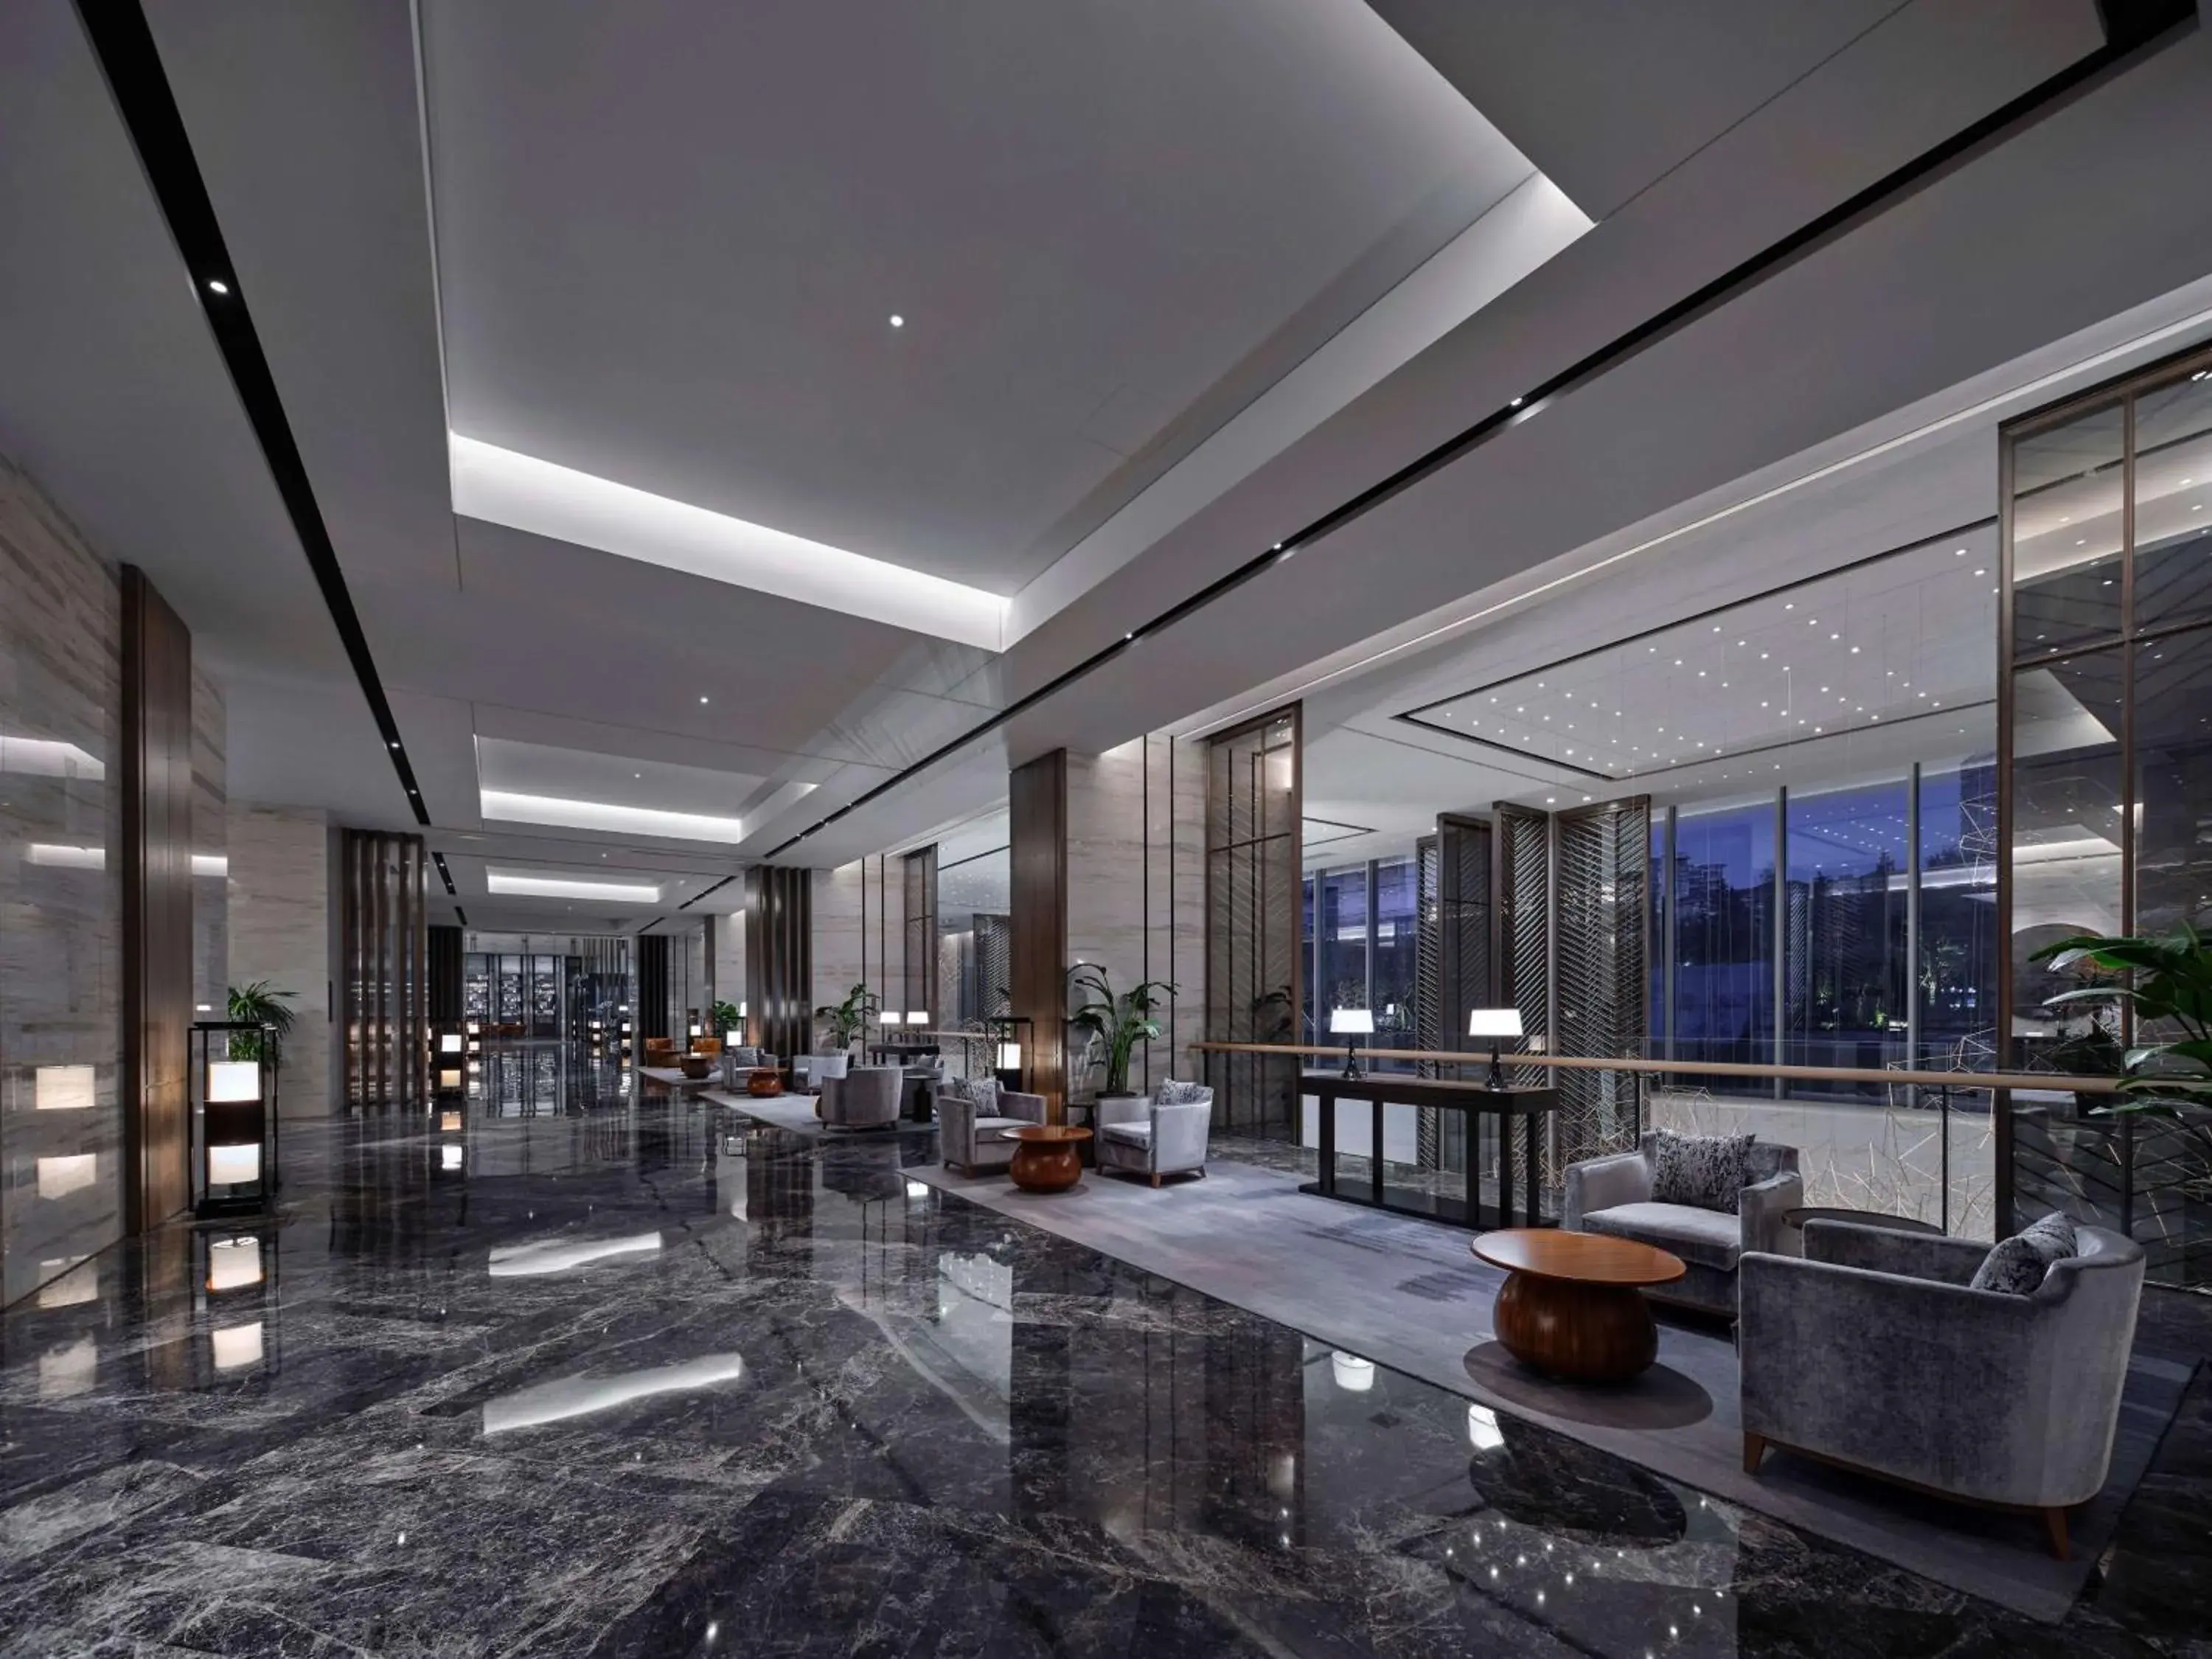 Lobby or reception, Lobby/Reception in Hilton Guiyang